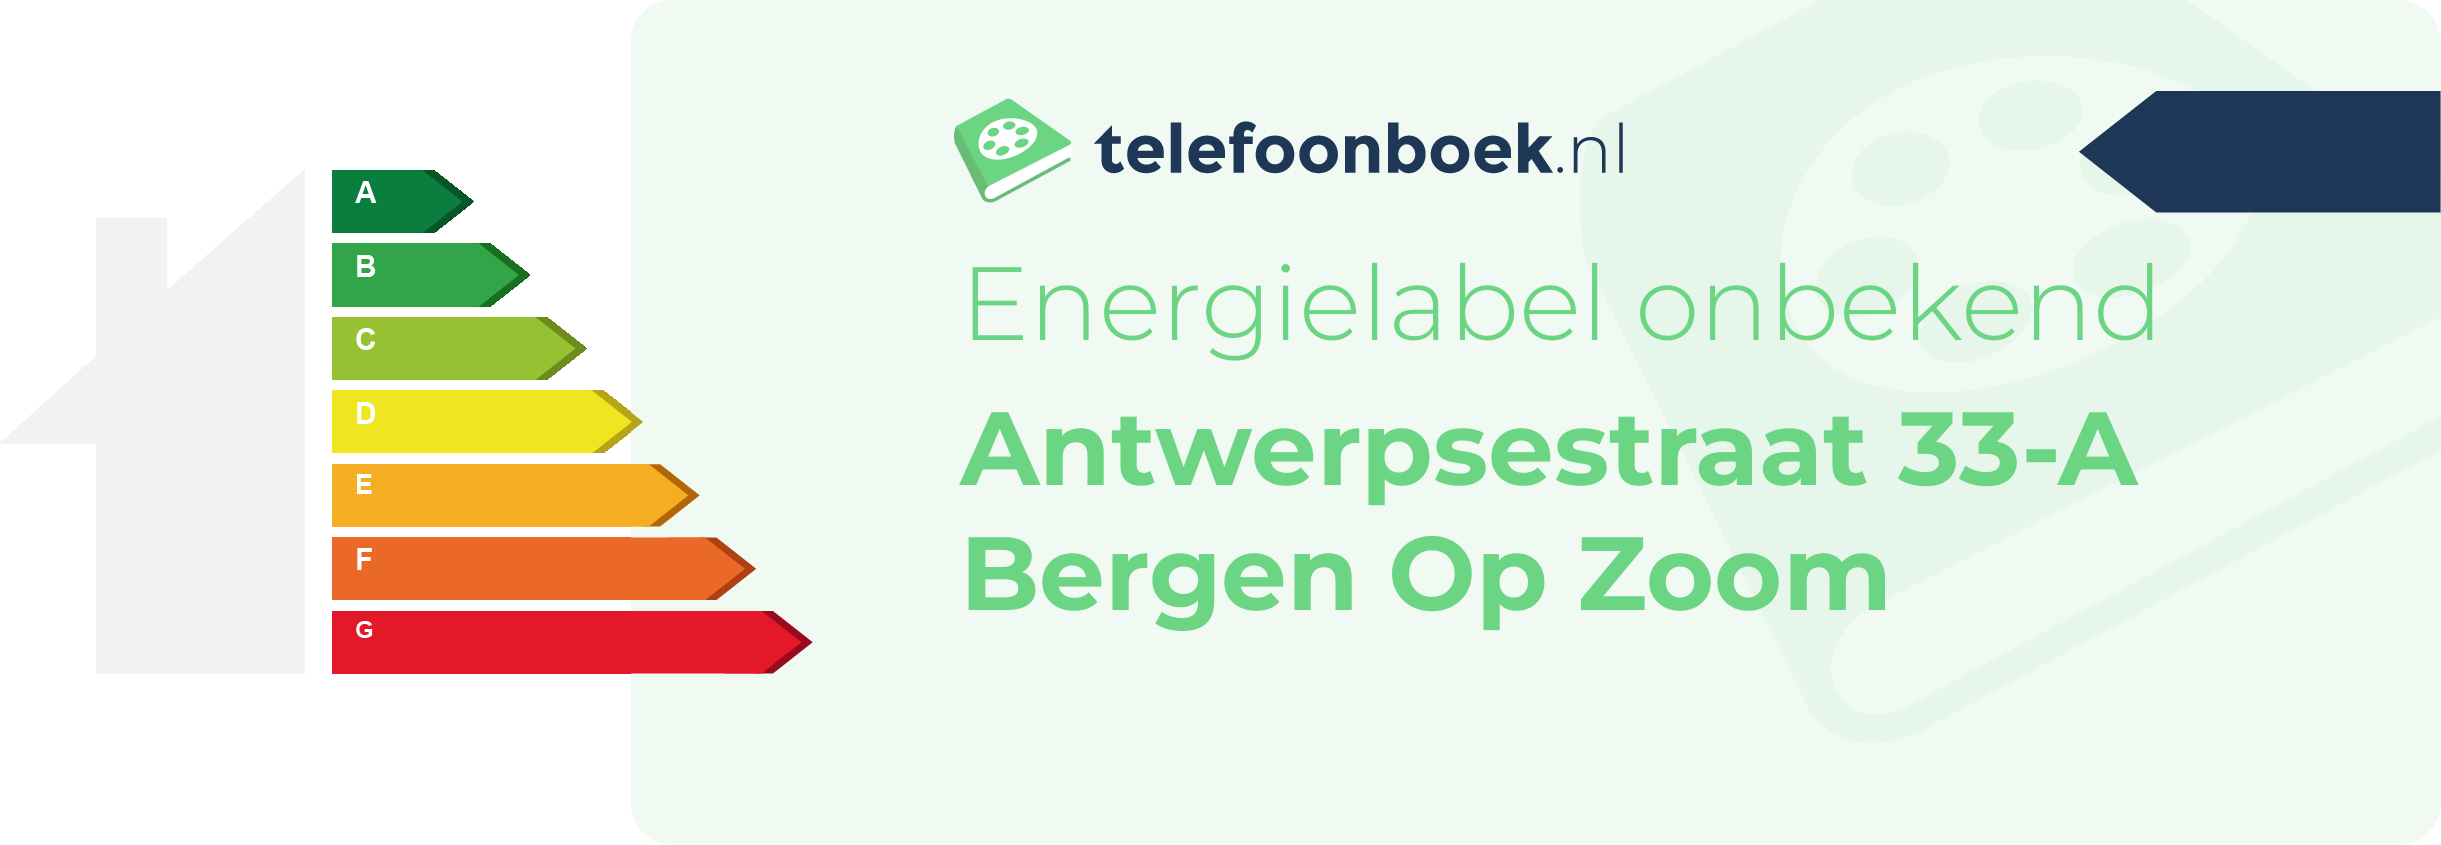 Energielabel Antwerpsestraat 33-A Bergen Op Zoom